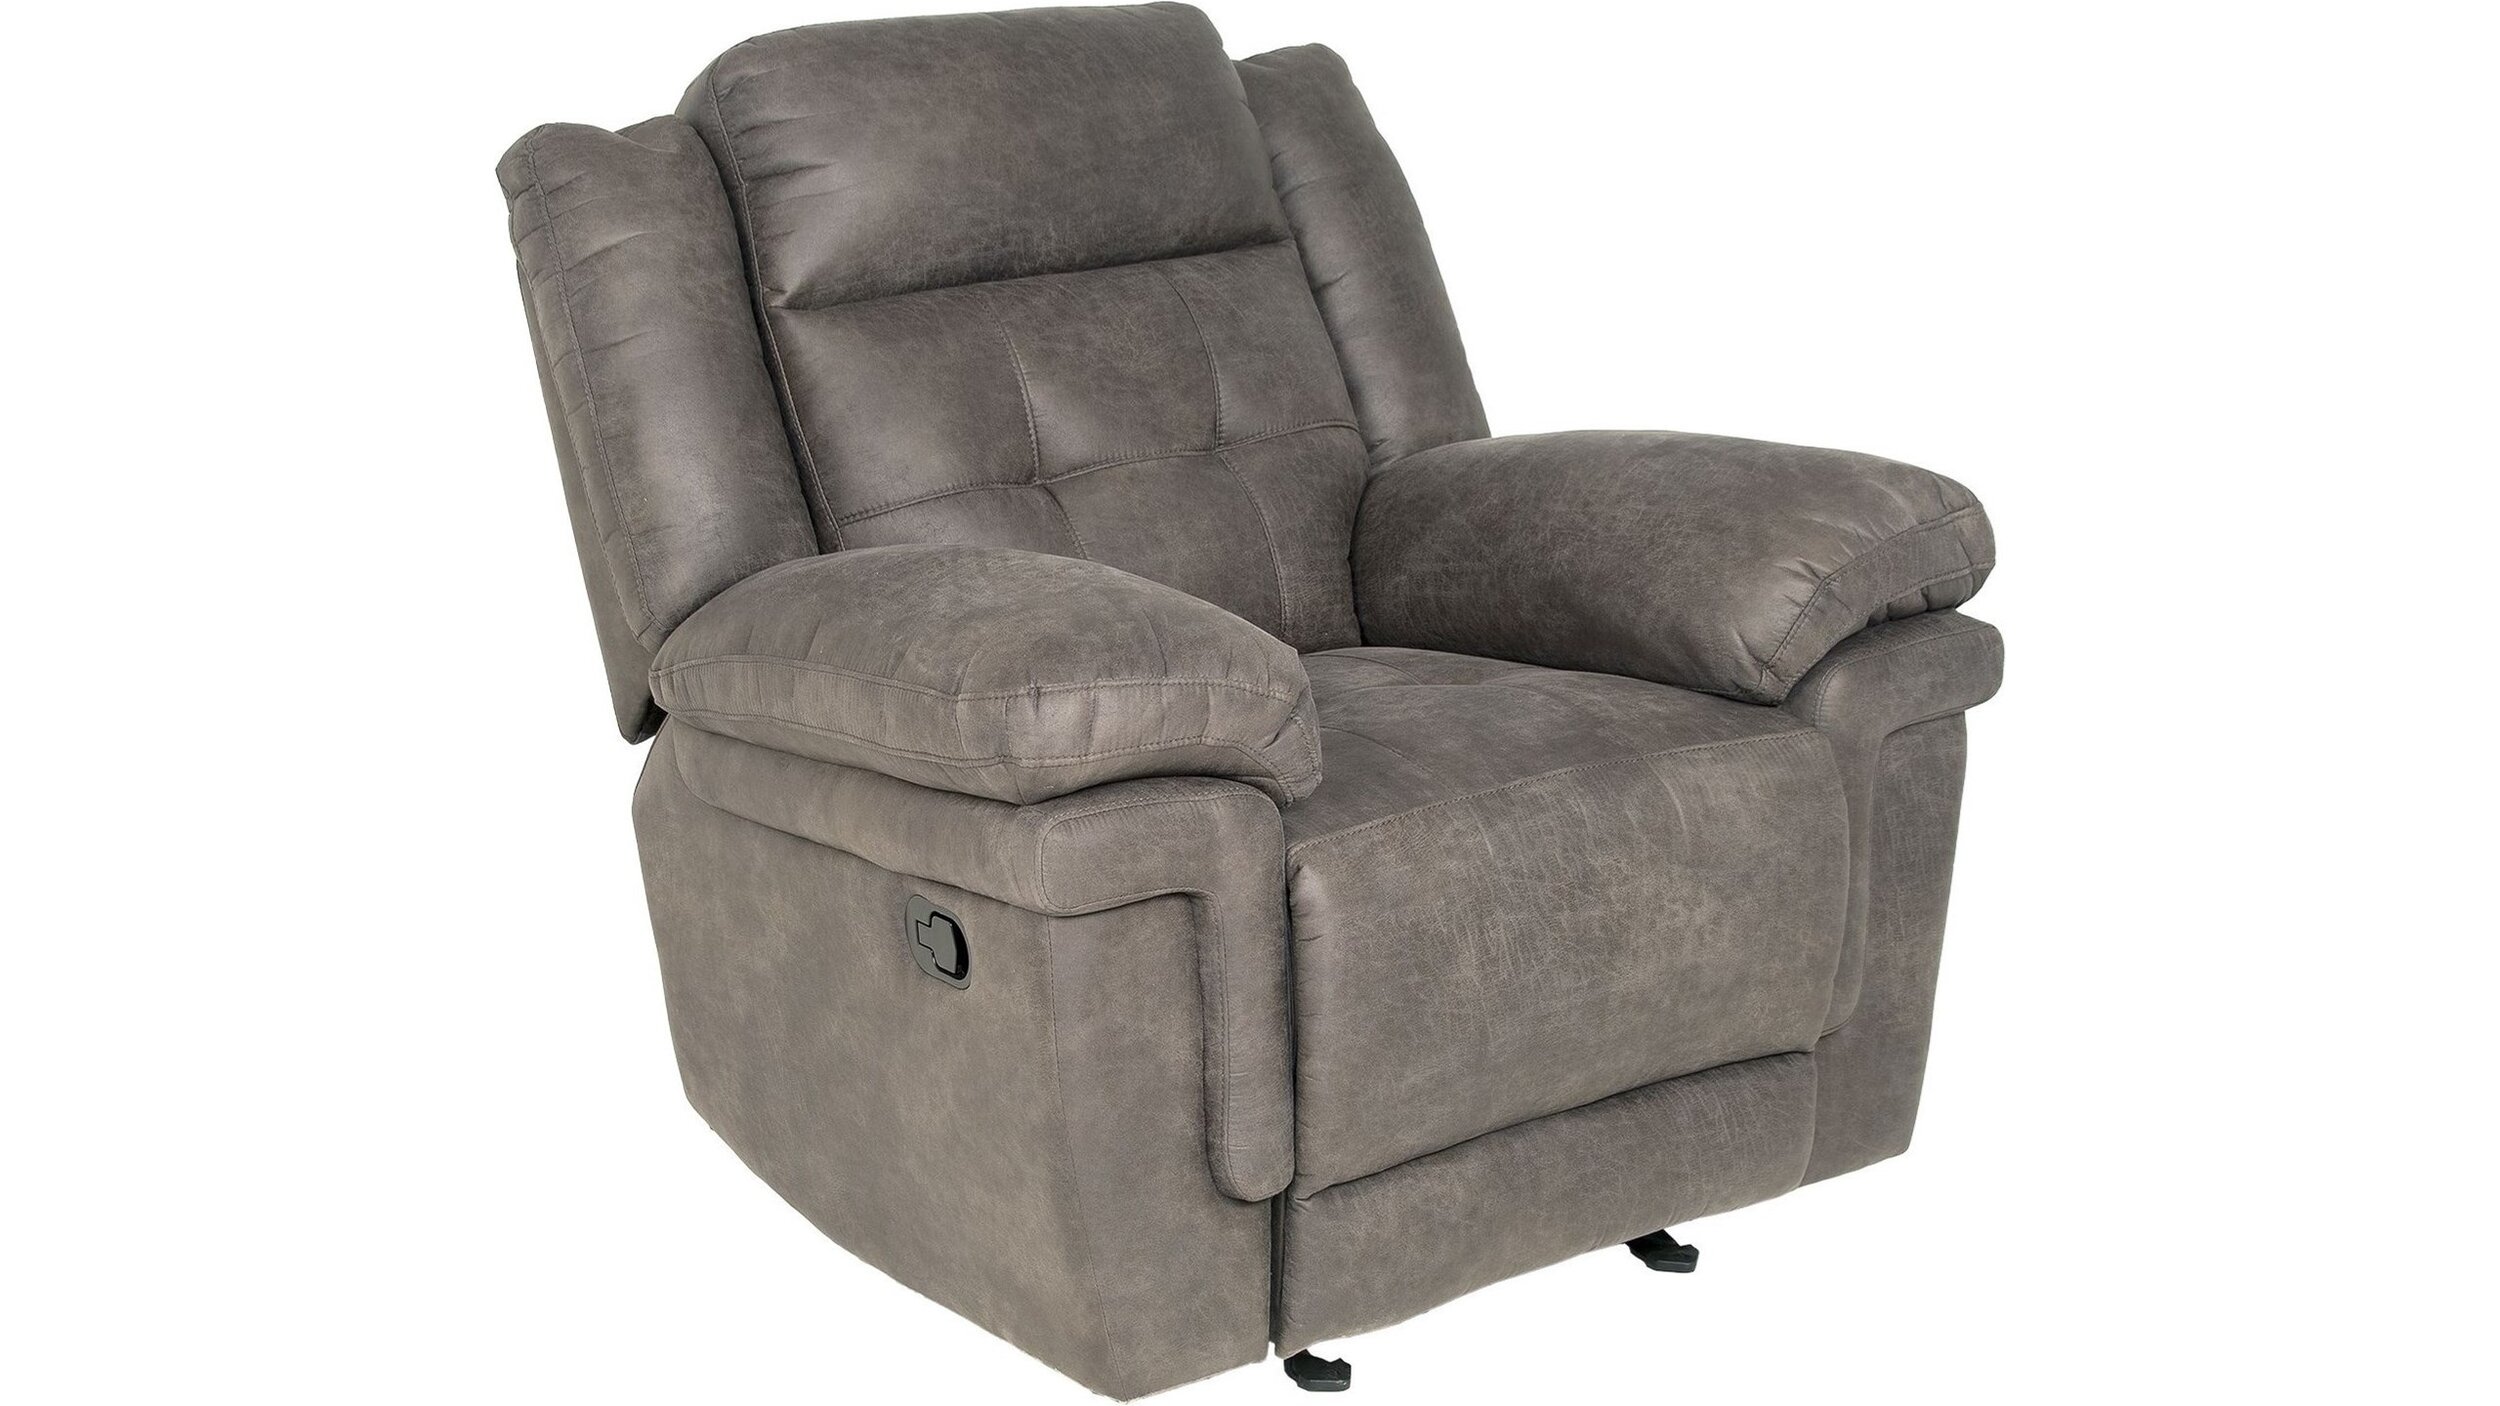 anastasia-recliner-grey-recliner-belfort-furniture.jpg